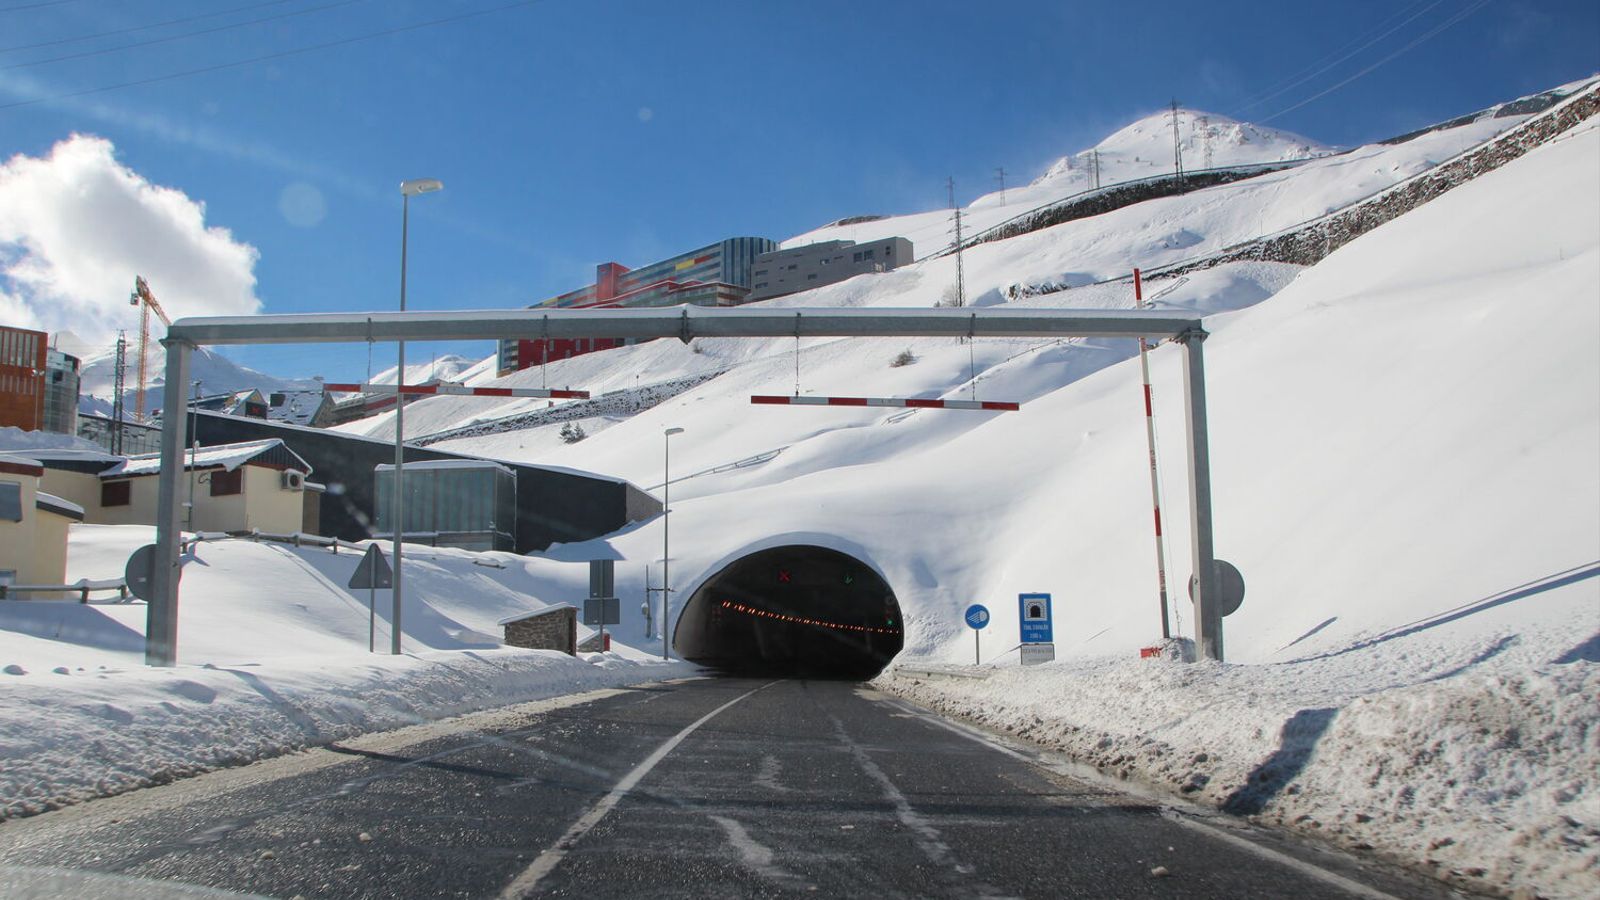 Els preus per passar el túnel d'Envalira s'incrementaran un 3% l'any que ve